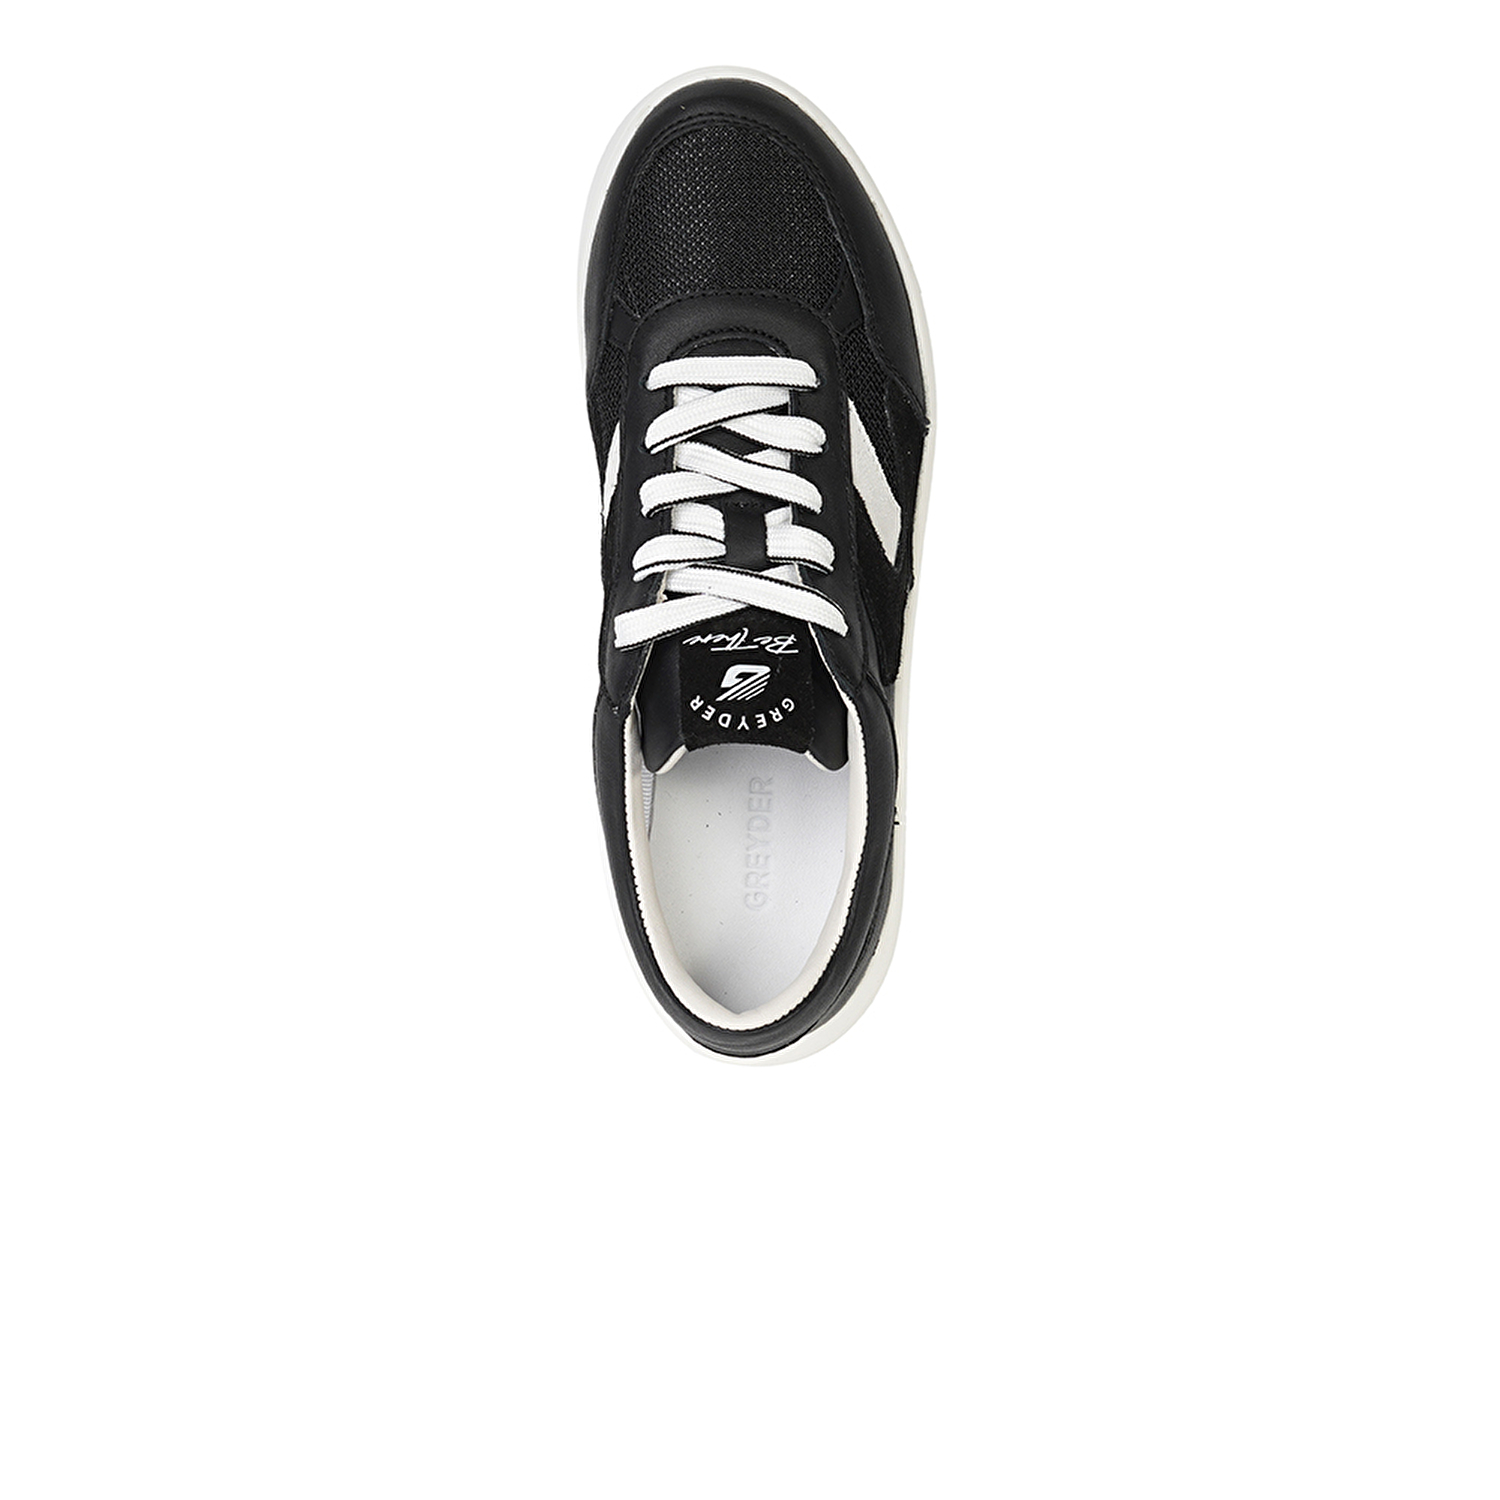 Kadın Siyah Beyaz Hakiki Deri Sneaker Ayakkabı 4Y2SA33601-3